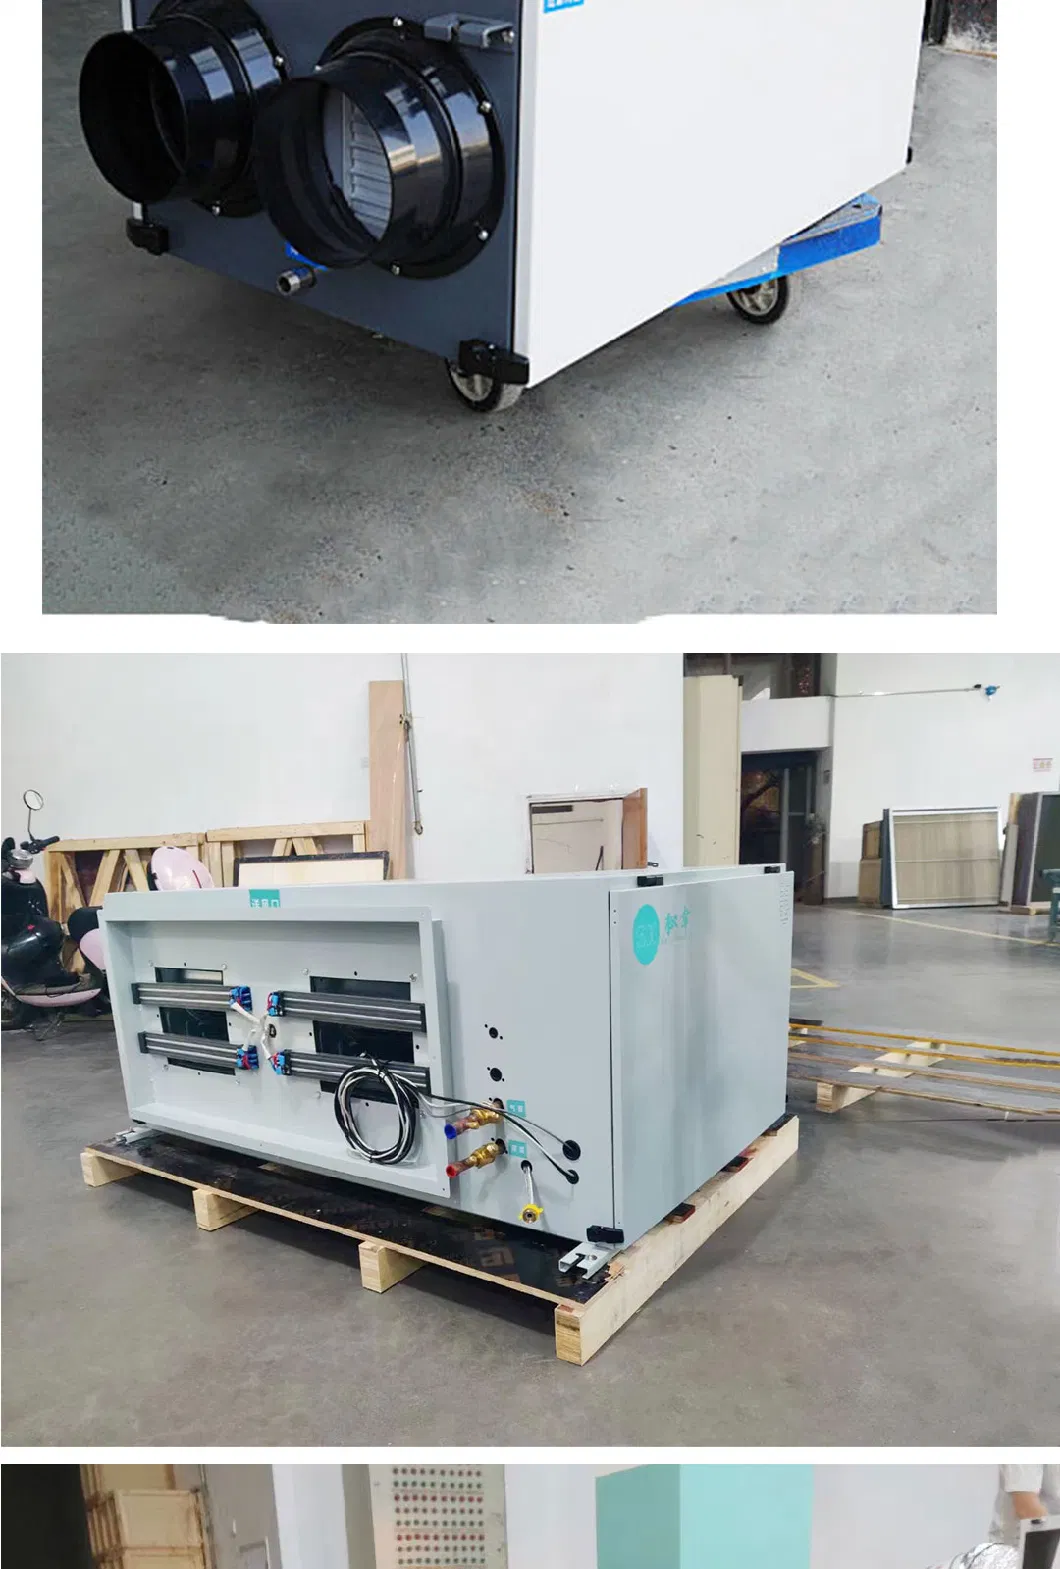 Shx-W1200 Industrial Air Dehumidifier Commercial Air Dryer Air Handling Unit